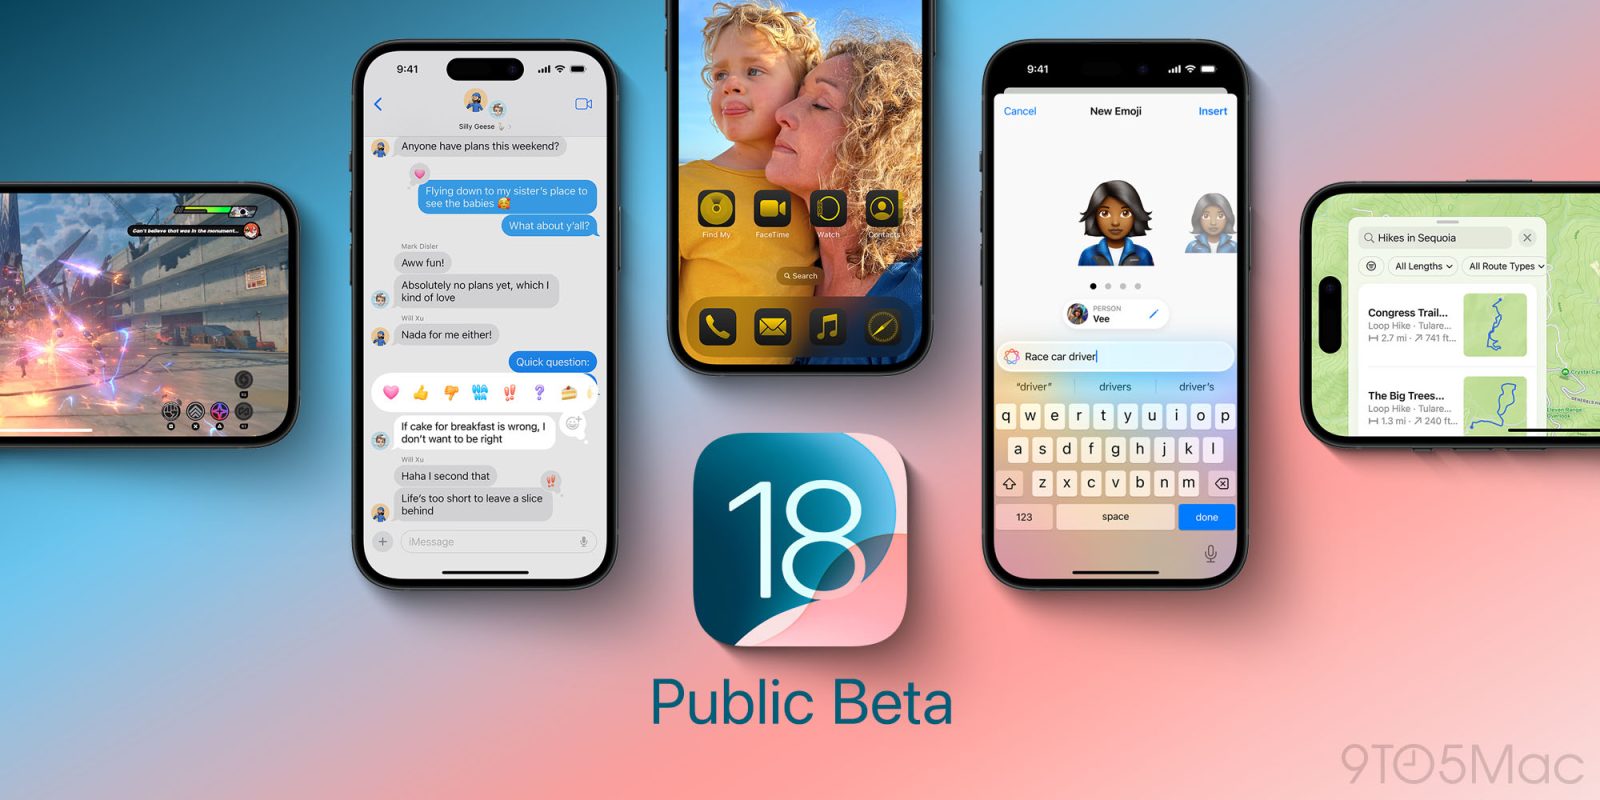 iOS 18 Public Beta